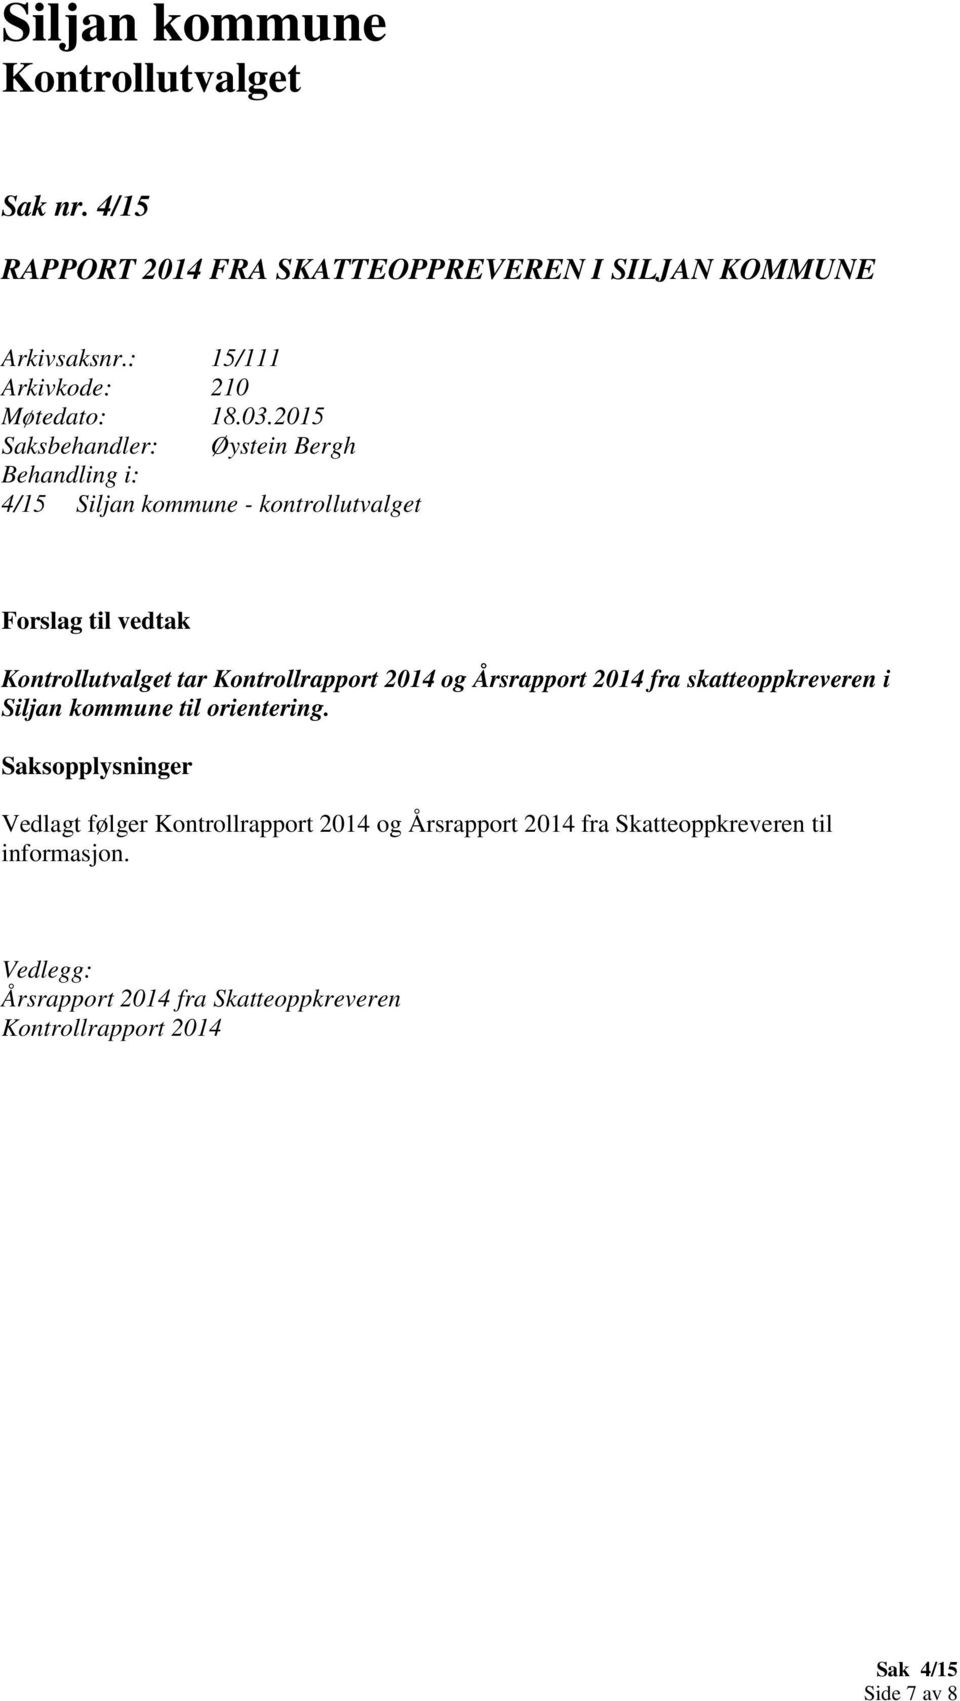 2014 fra skatteoppkreveren i Siljan kommune til orientering.